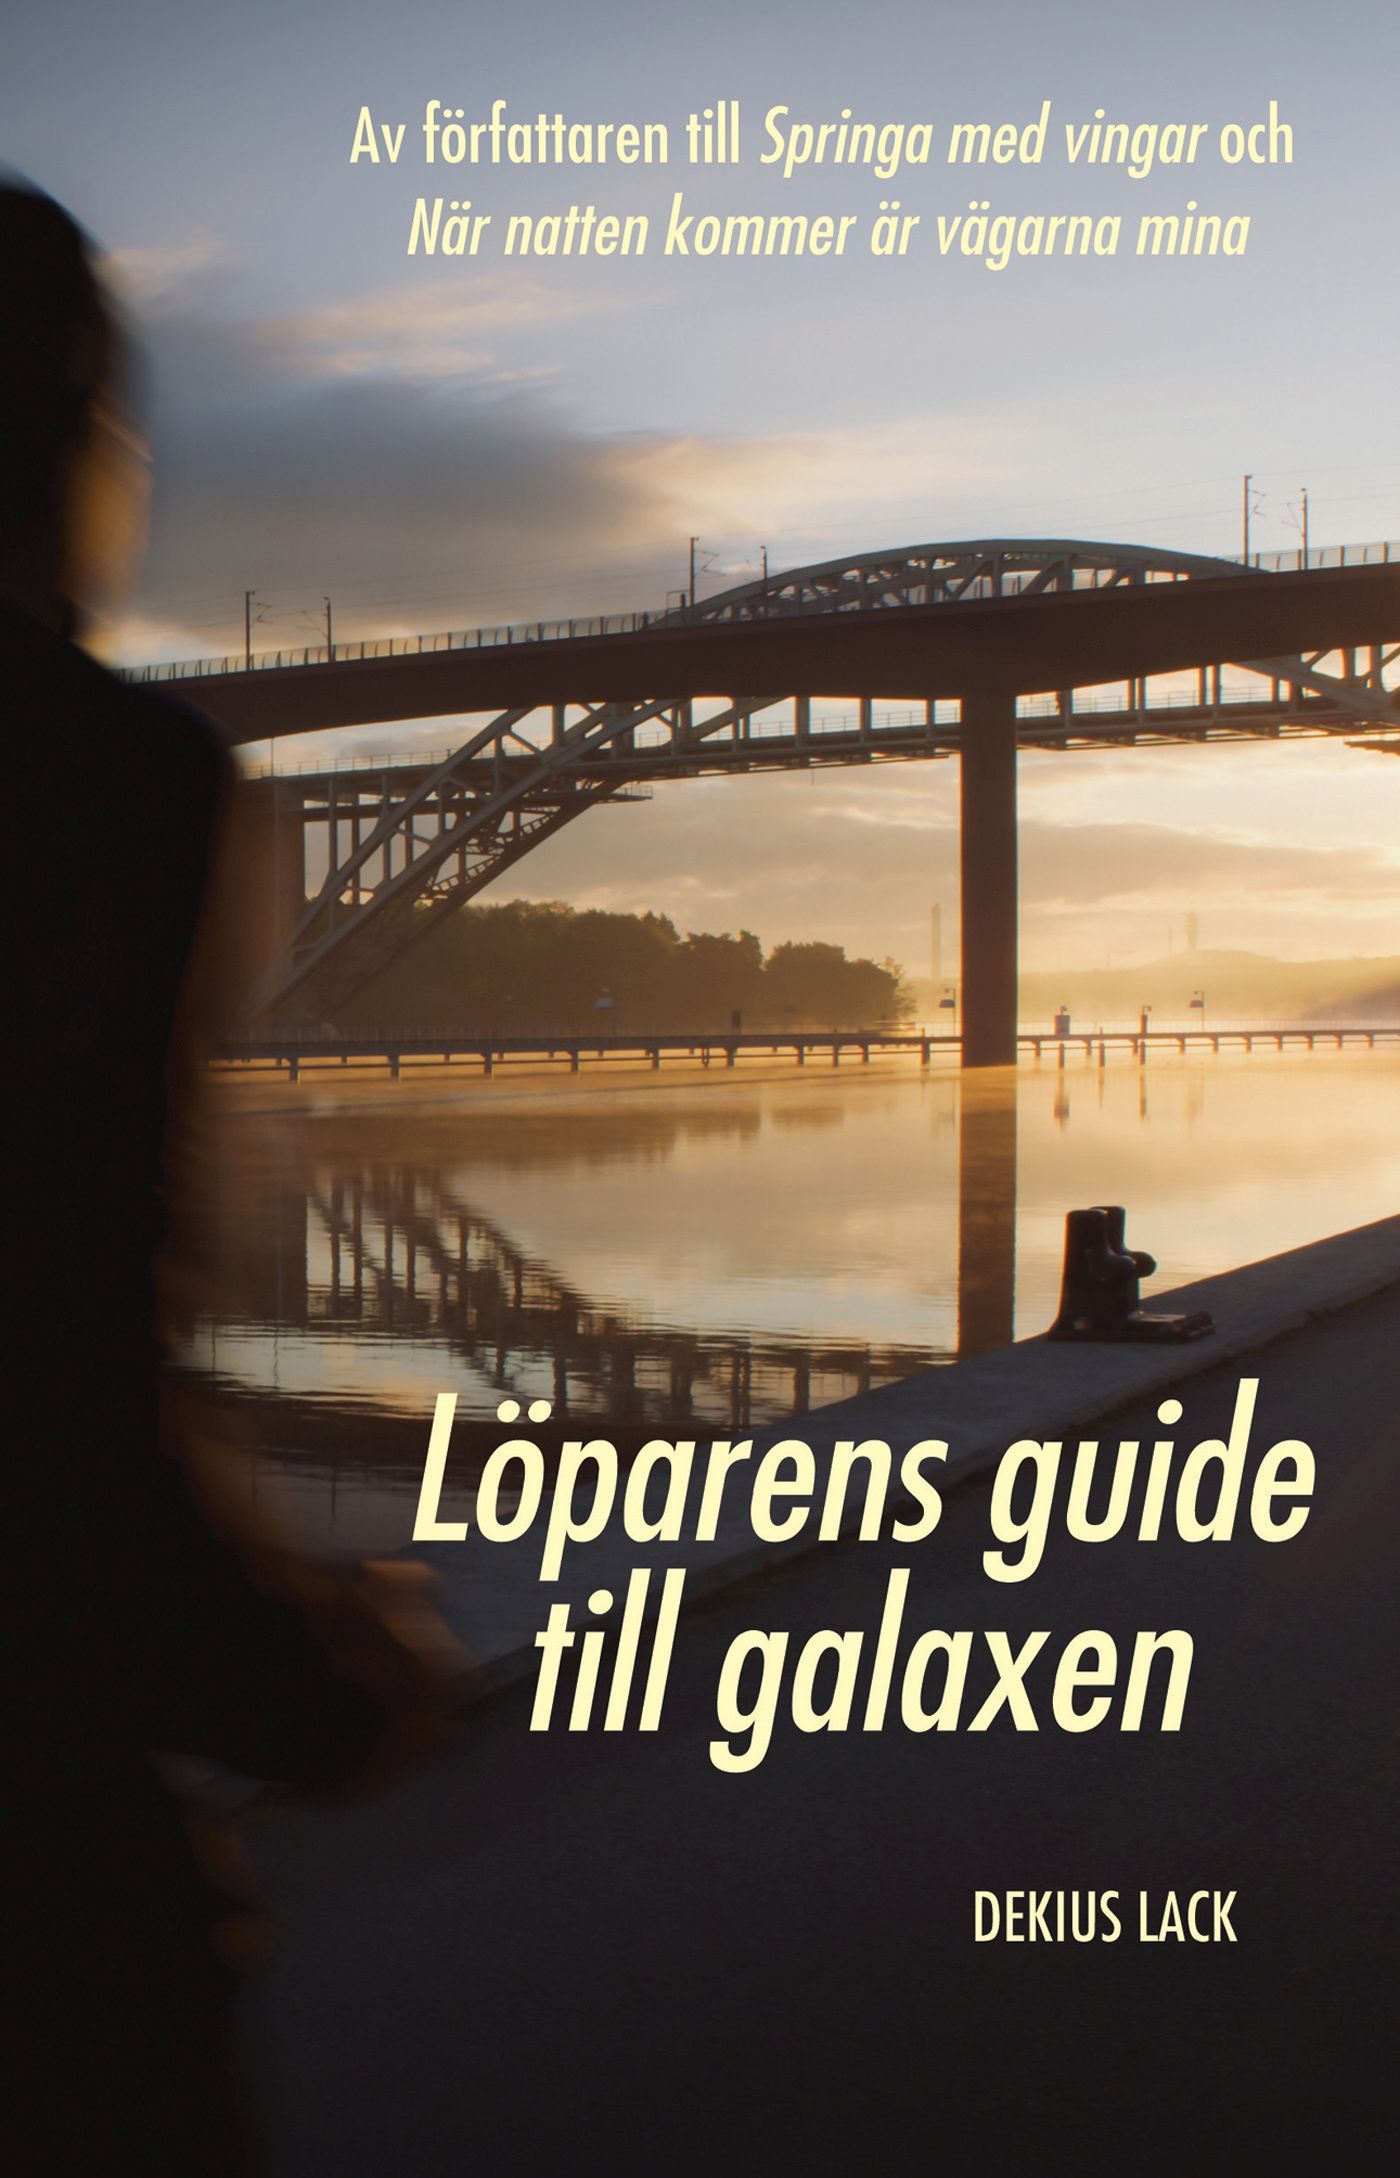 Löparens guide till galaxen, eBook by Dekius Lack